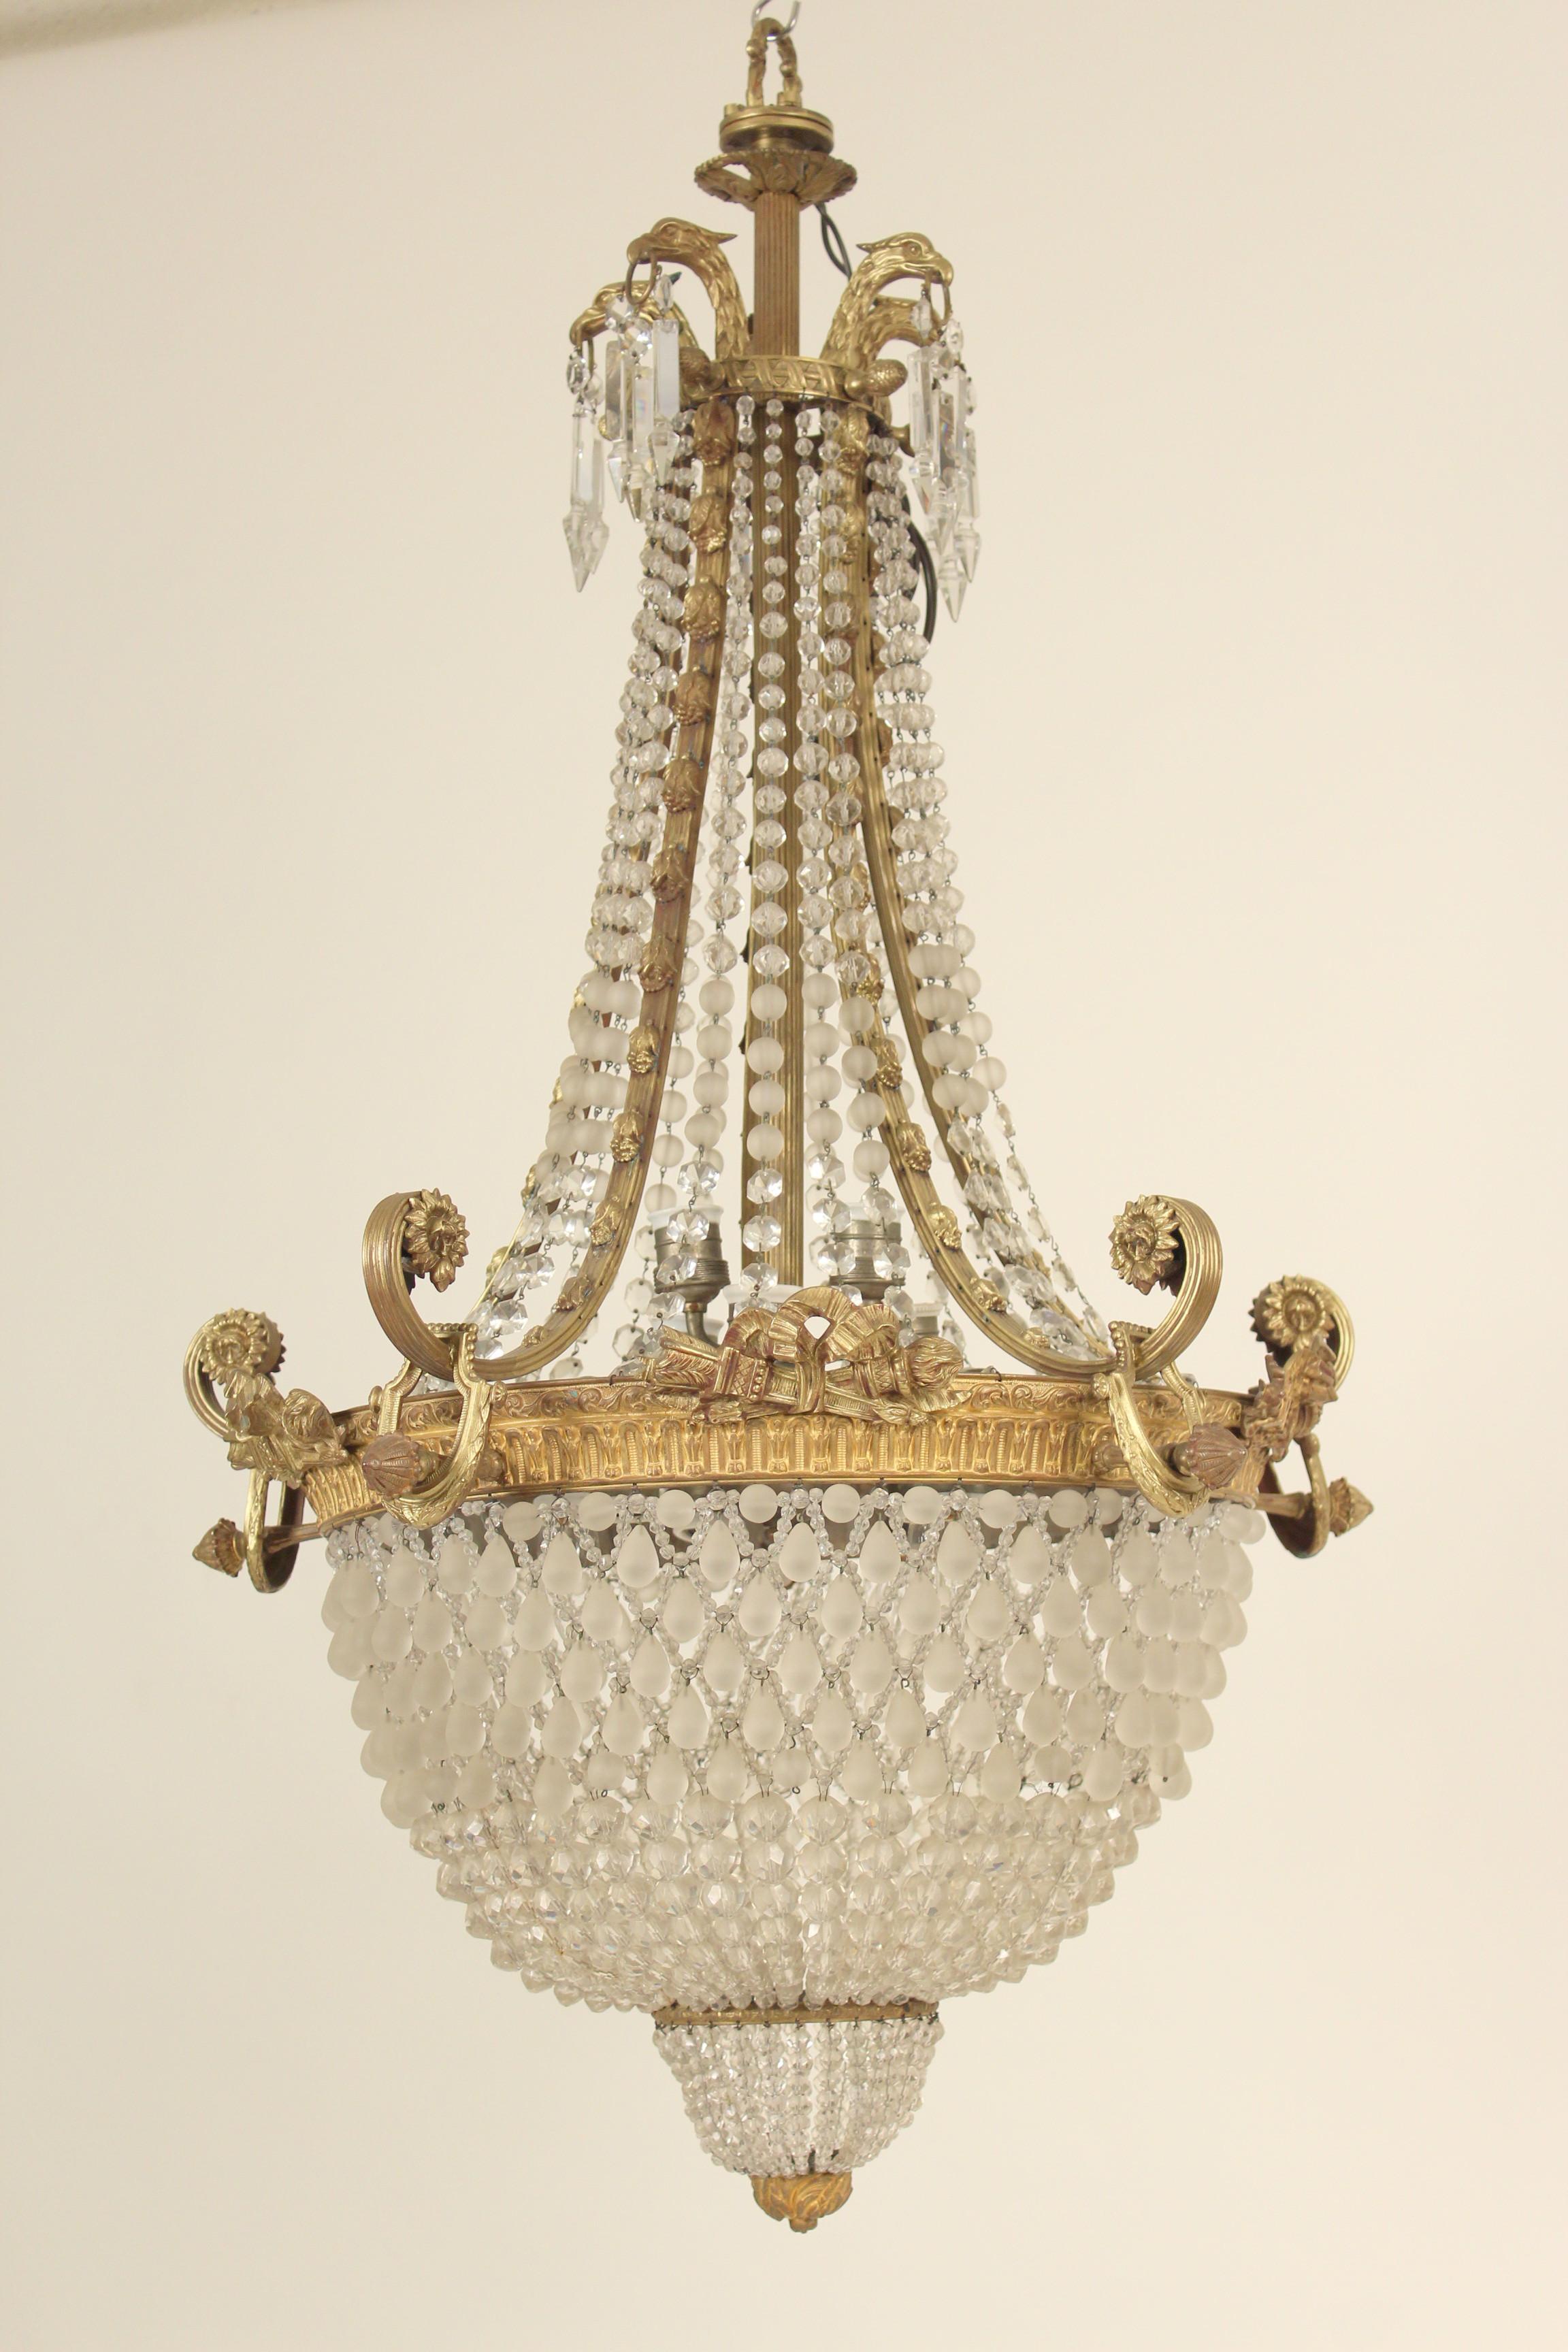 Lustre de style néoclassique en bronze doré, cristal perlé et verre dépoli, avec 10 lampes intérieures, vers les années 1930.